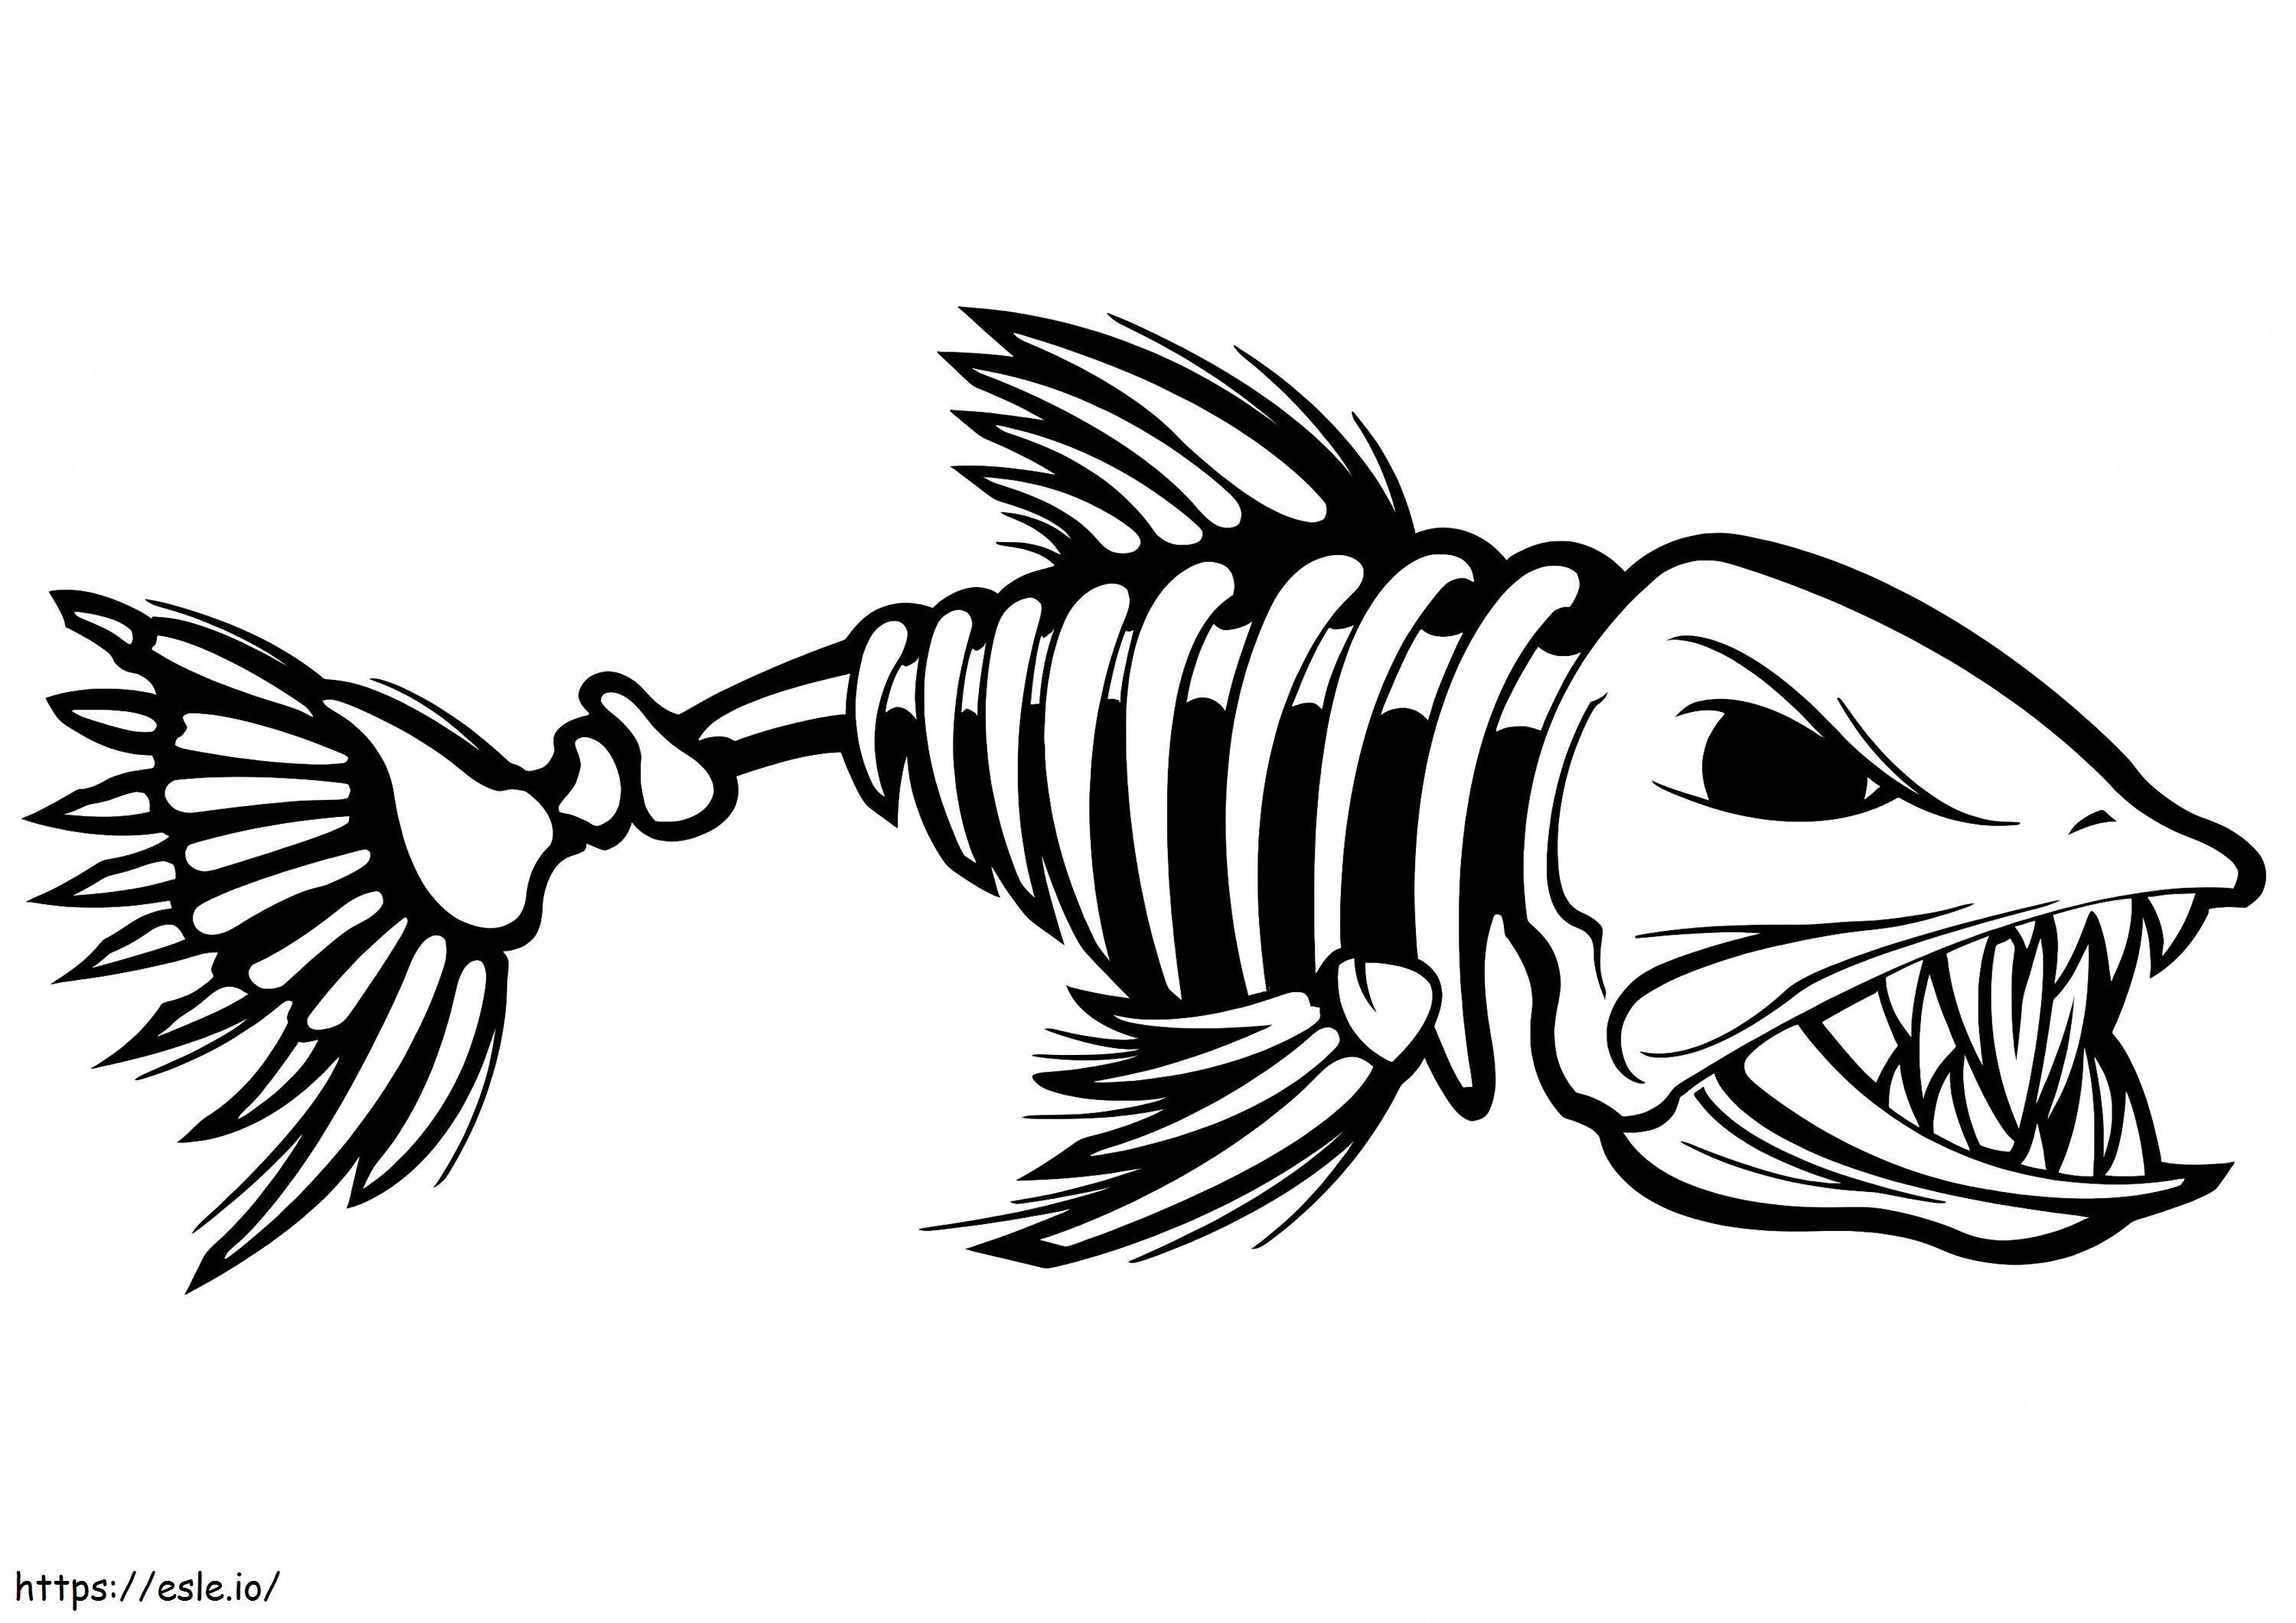 Szkielet ryby kolorowanka